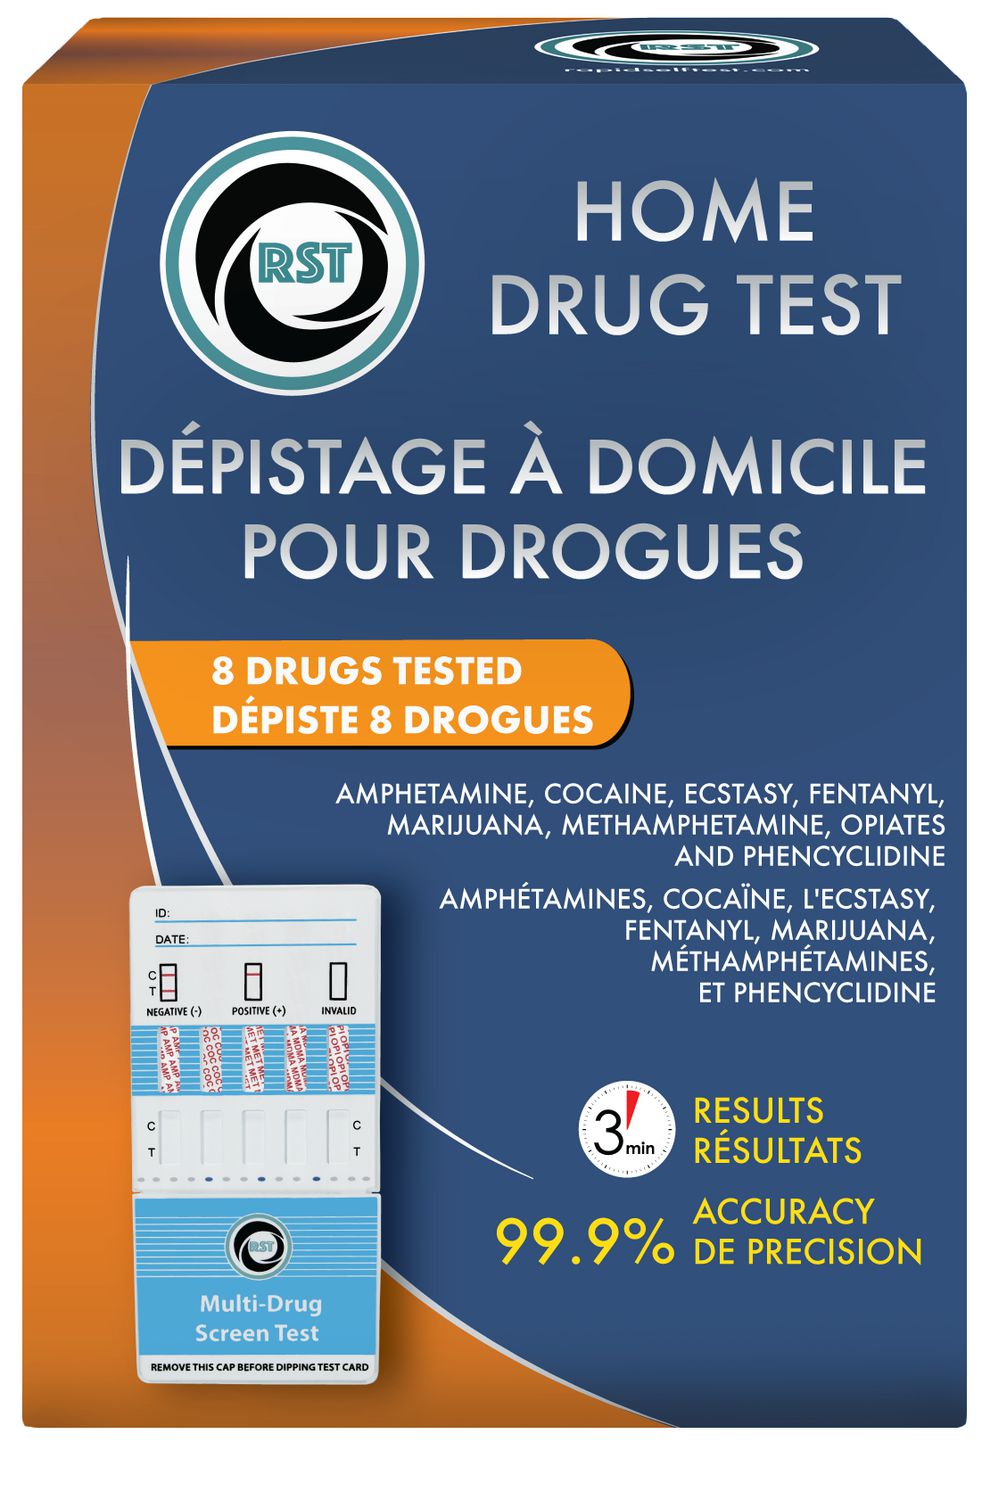 Depistage a Domicile Pour Drouge- Depiste 8 Drogues Test de drogue